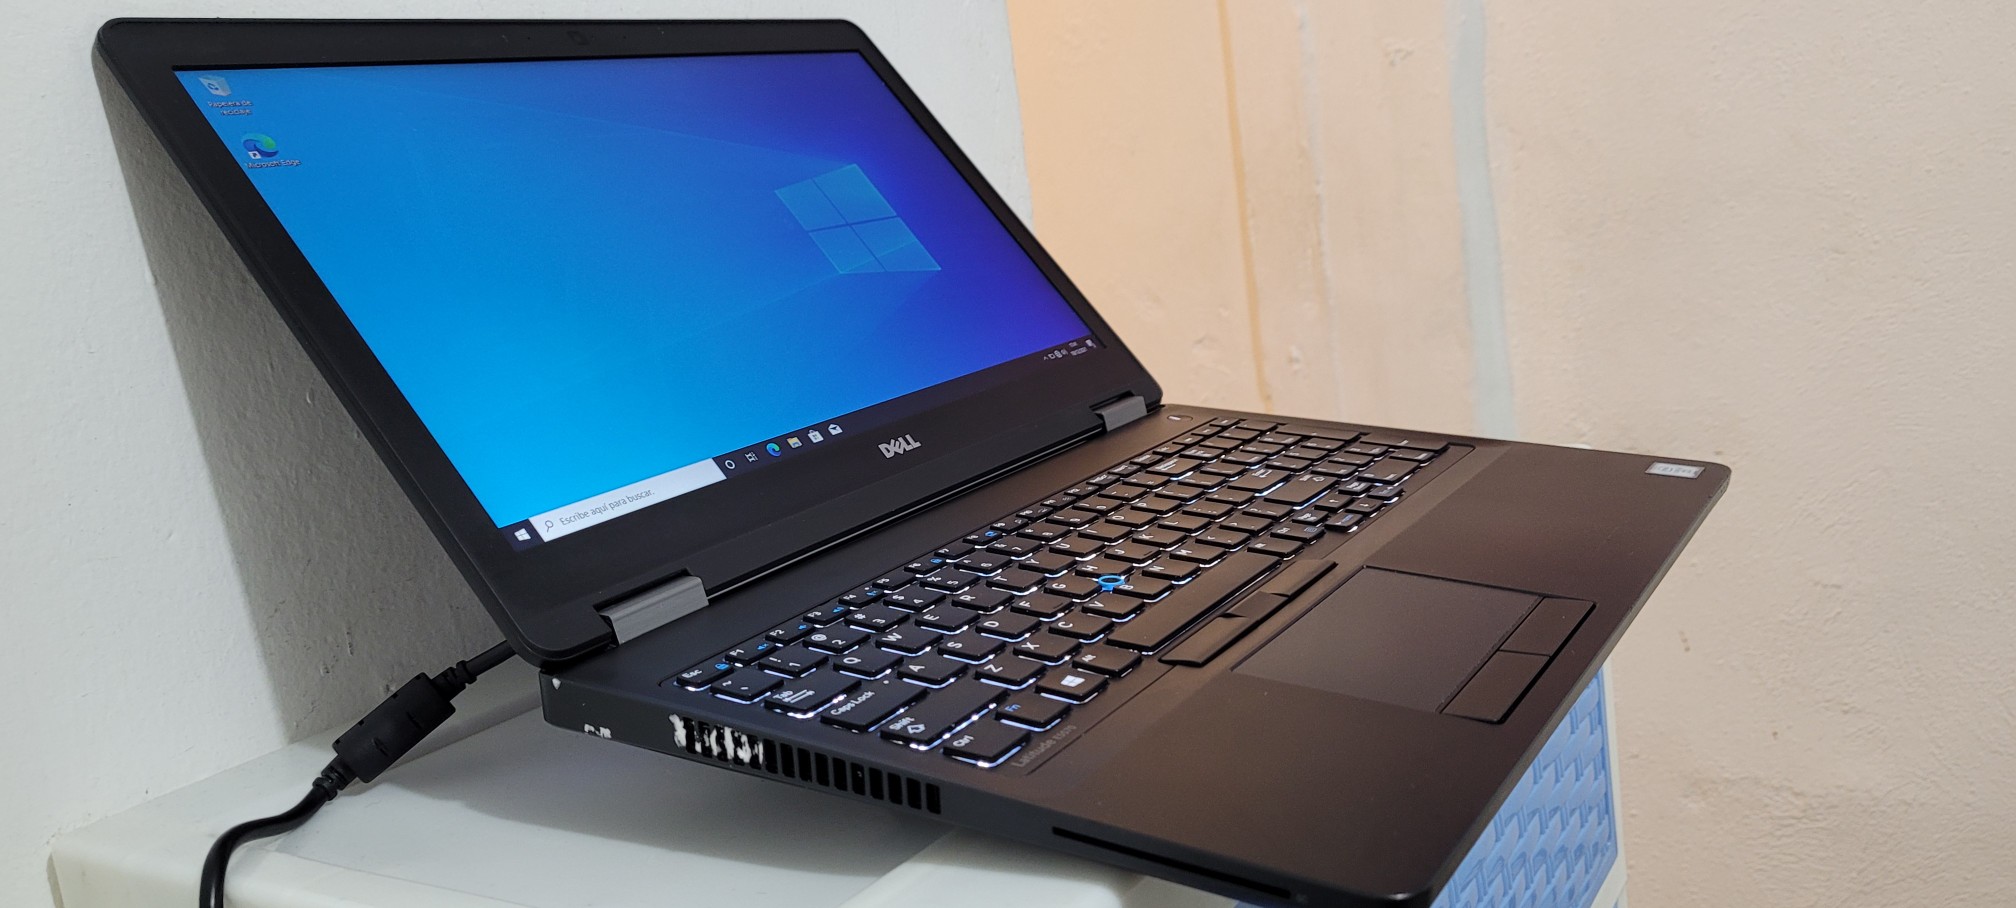 computadoras y laptops - Dell 5570 17 Pulg Core i5 6ta Ram 8gb Disco 128gb Y 500gb hdmi full 1